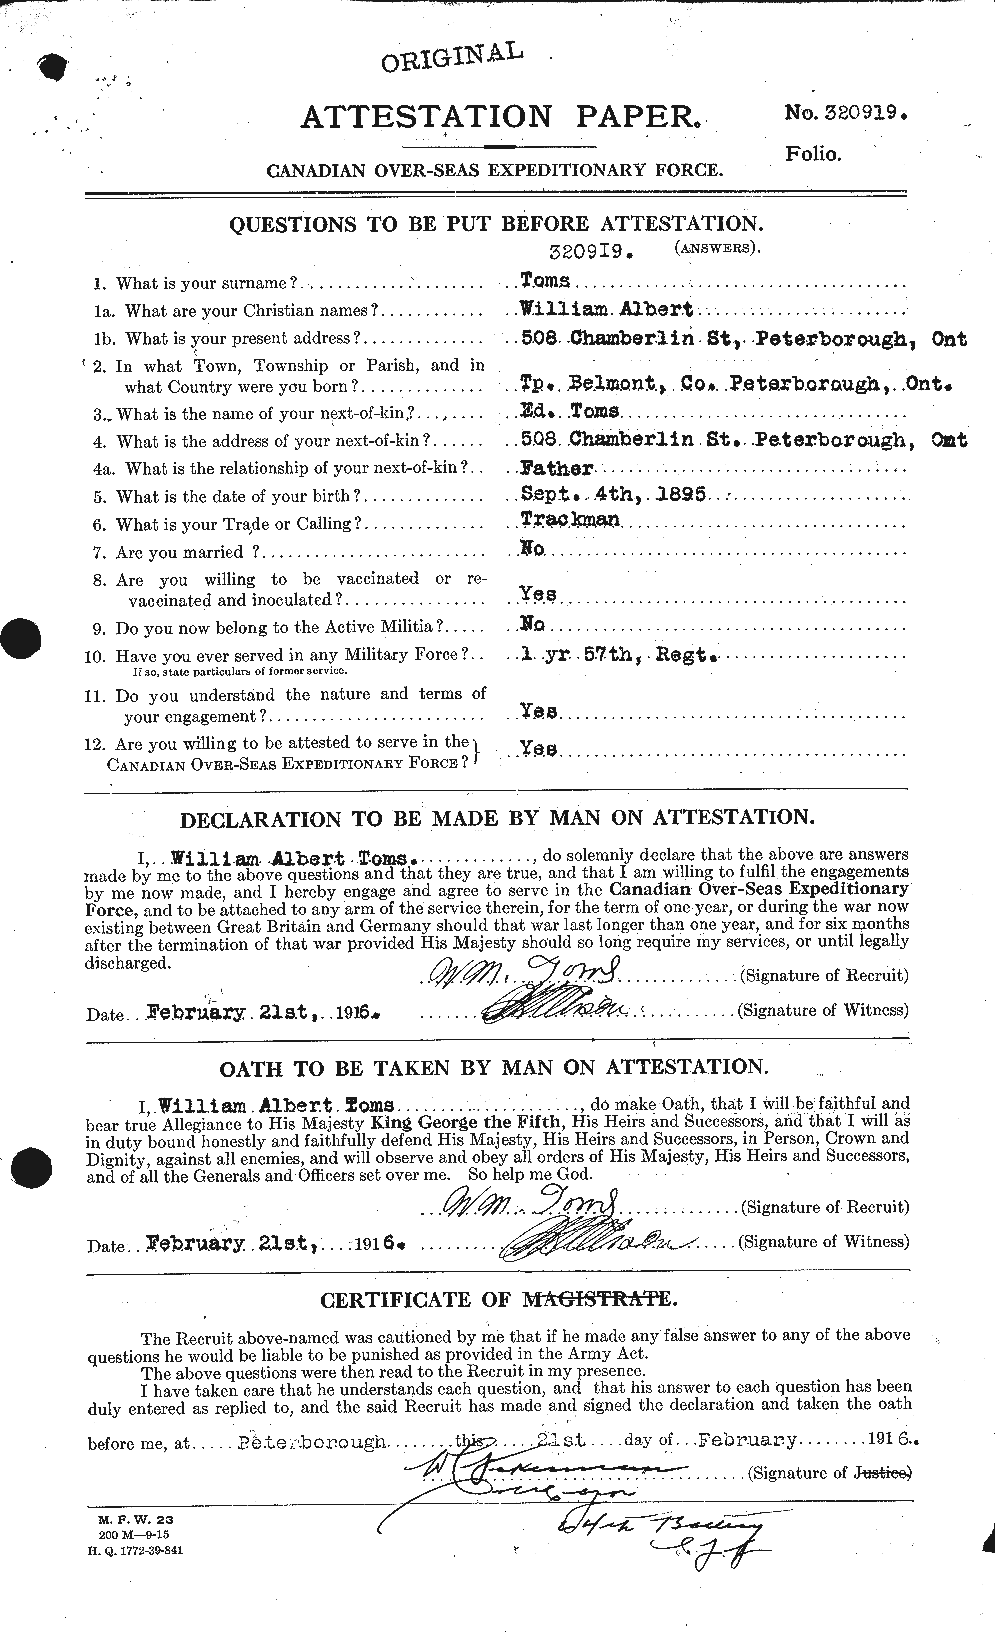 Dossiers du Personnel de la Première Guerre mondiale - CEC 639514a